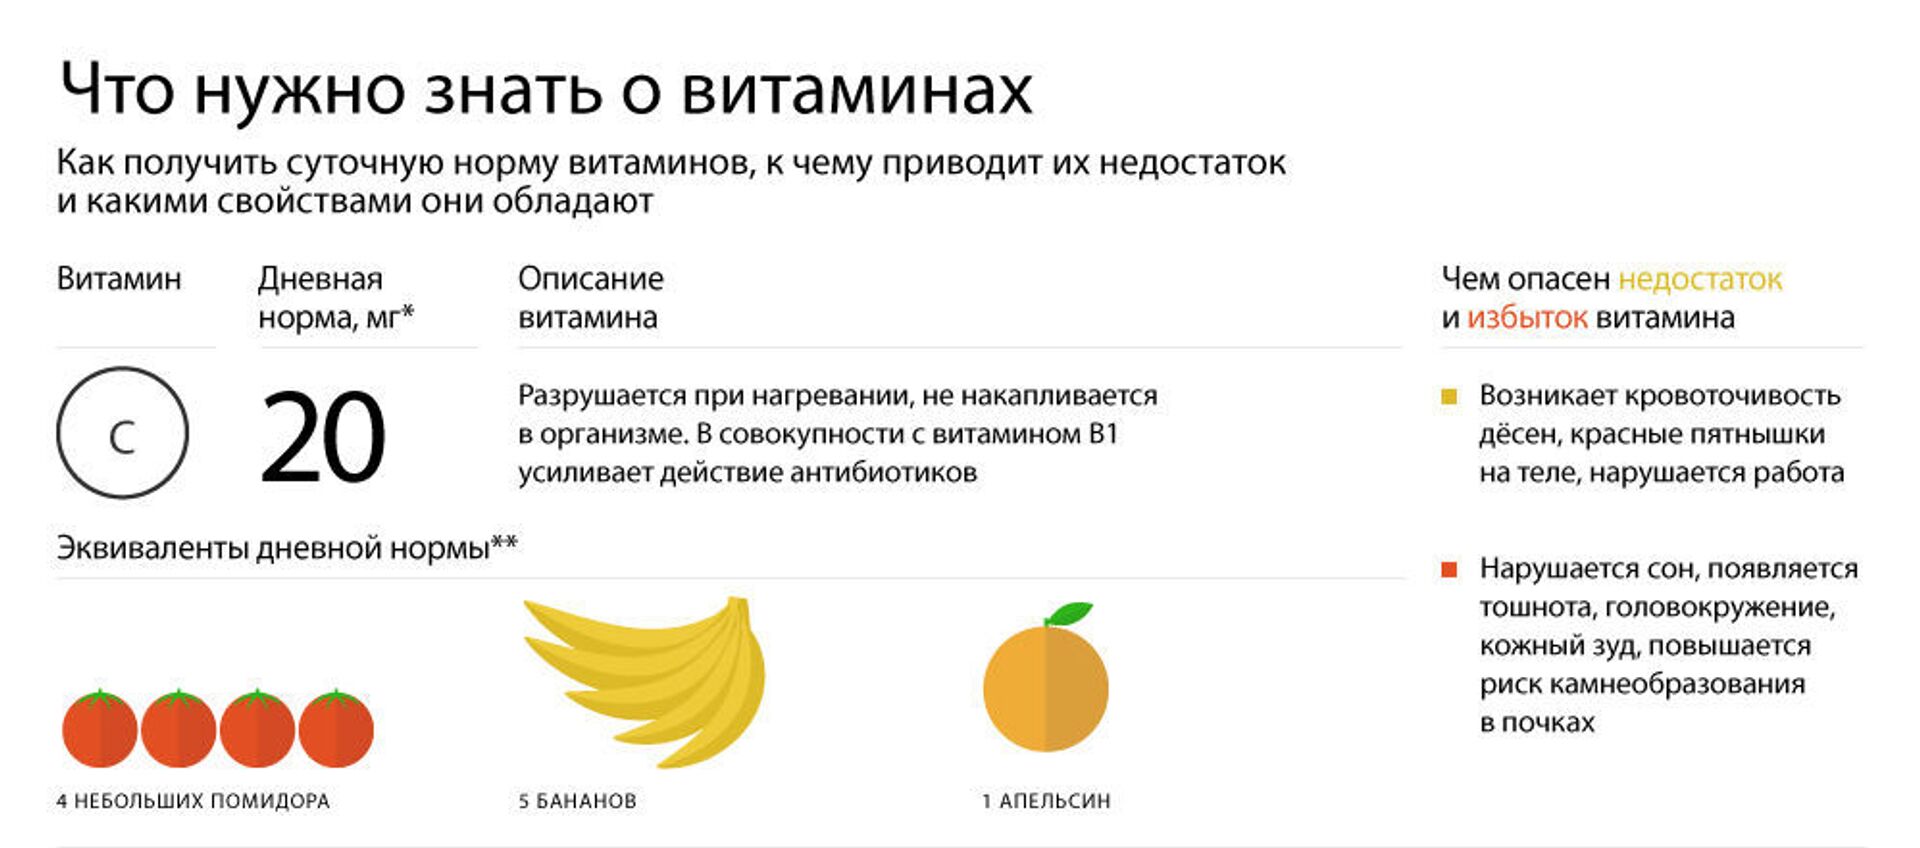 Что нужно знать о витаминах - Sputnik Таджикистан, 1920, 01.03.2019